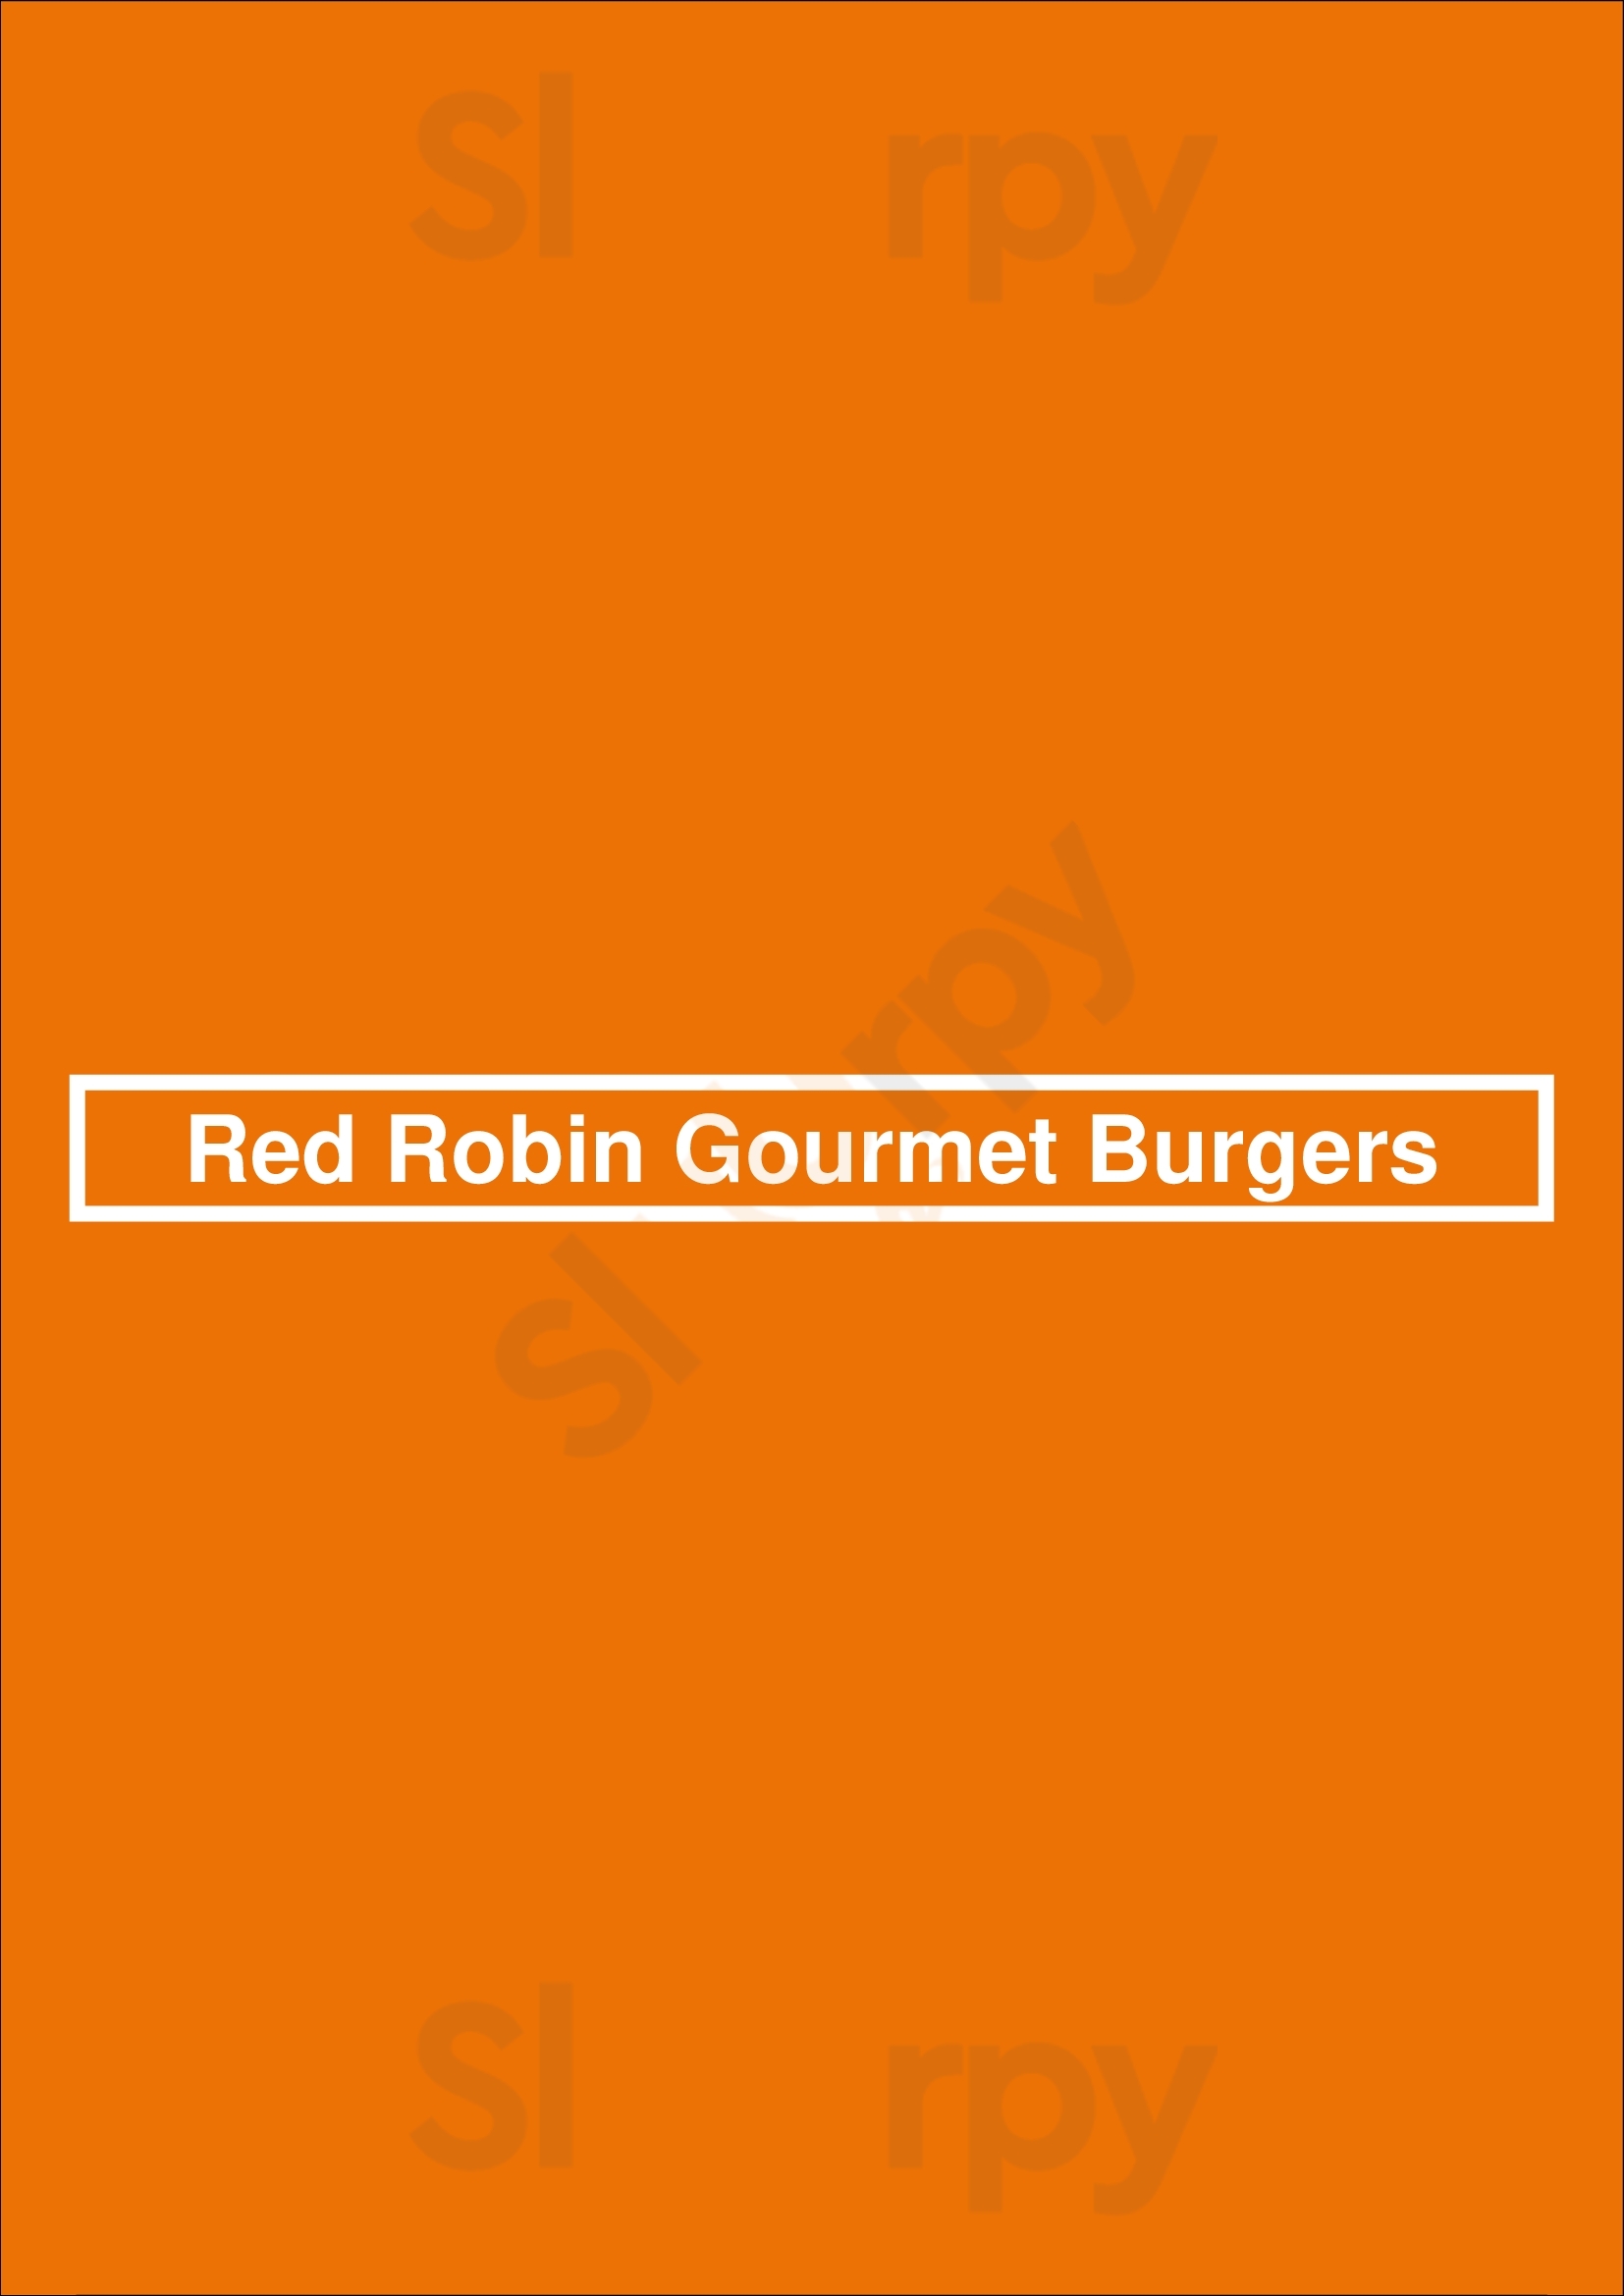 Red Robin Gourmet Burgers Port Orange Menu - 1